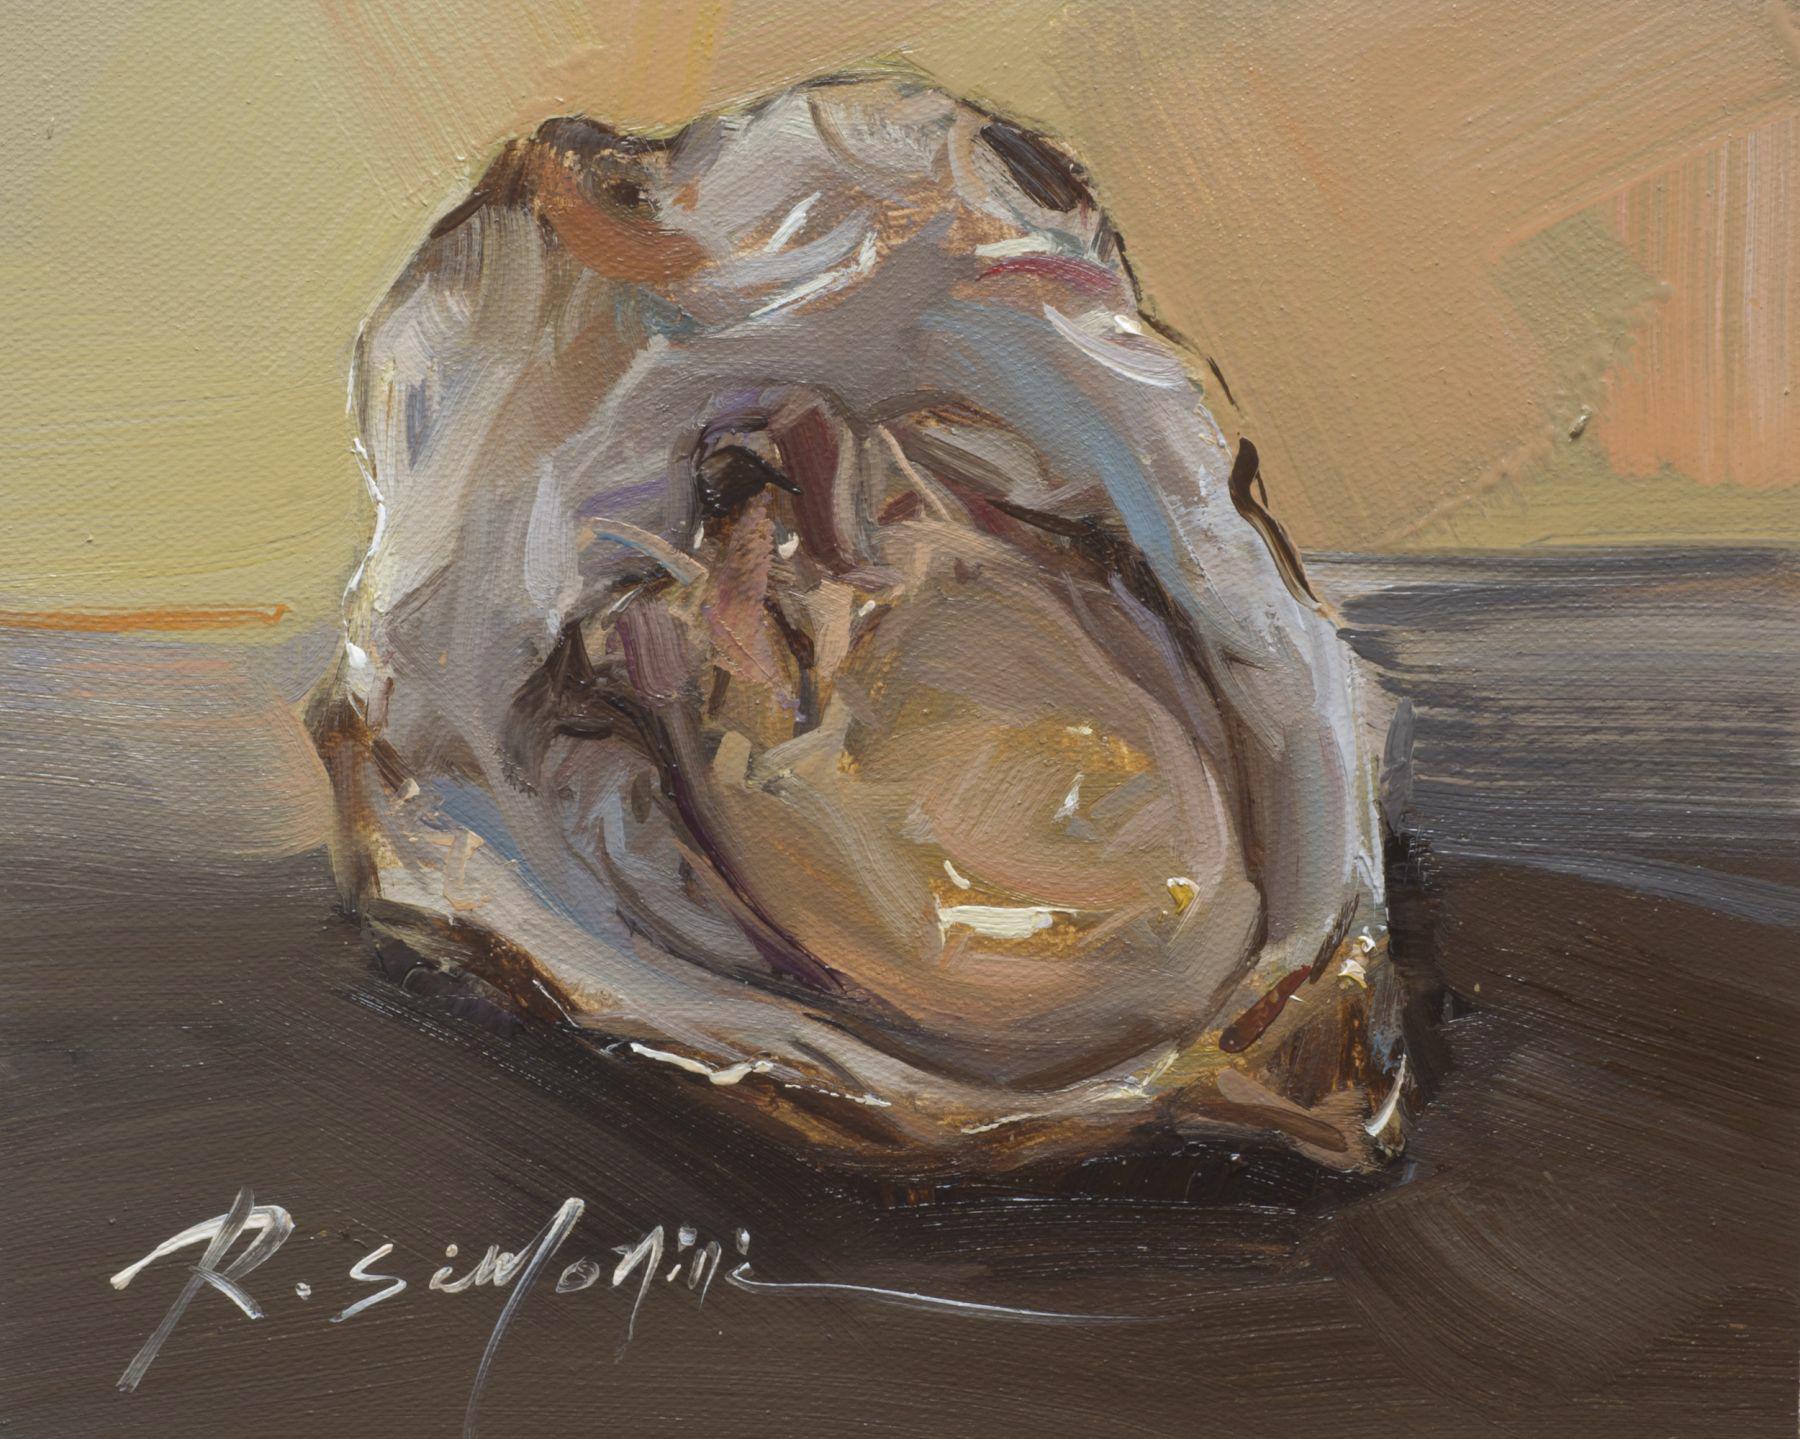 Dieses Gemälde des Künstlers Ray Simonini mit dem Titel "Raw" ist ein 8x10 nautisches Ölgemälde auf Leinwand, das eine Nahaufnahme einer Austernschale vor einem ruhigen, weichen grauen und leuchtend gelben Hintergrund zeigt.

Über den